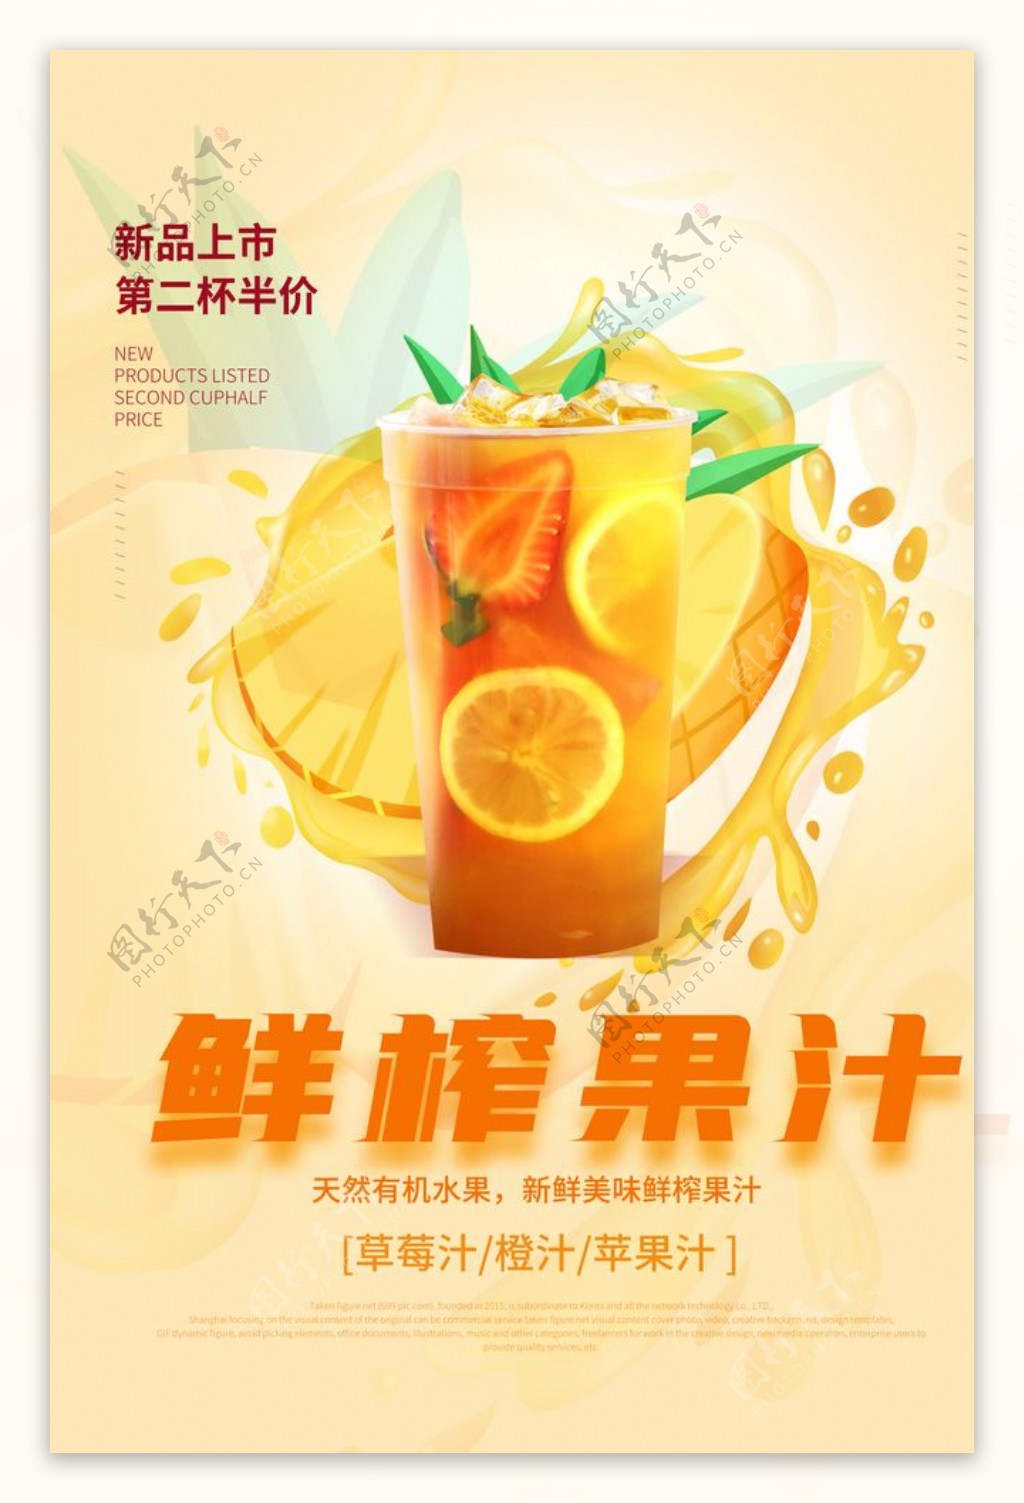 鲜榨果汁饮品宣传活动海报素材